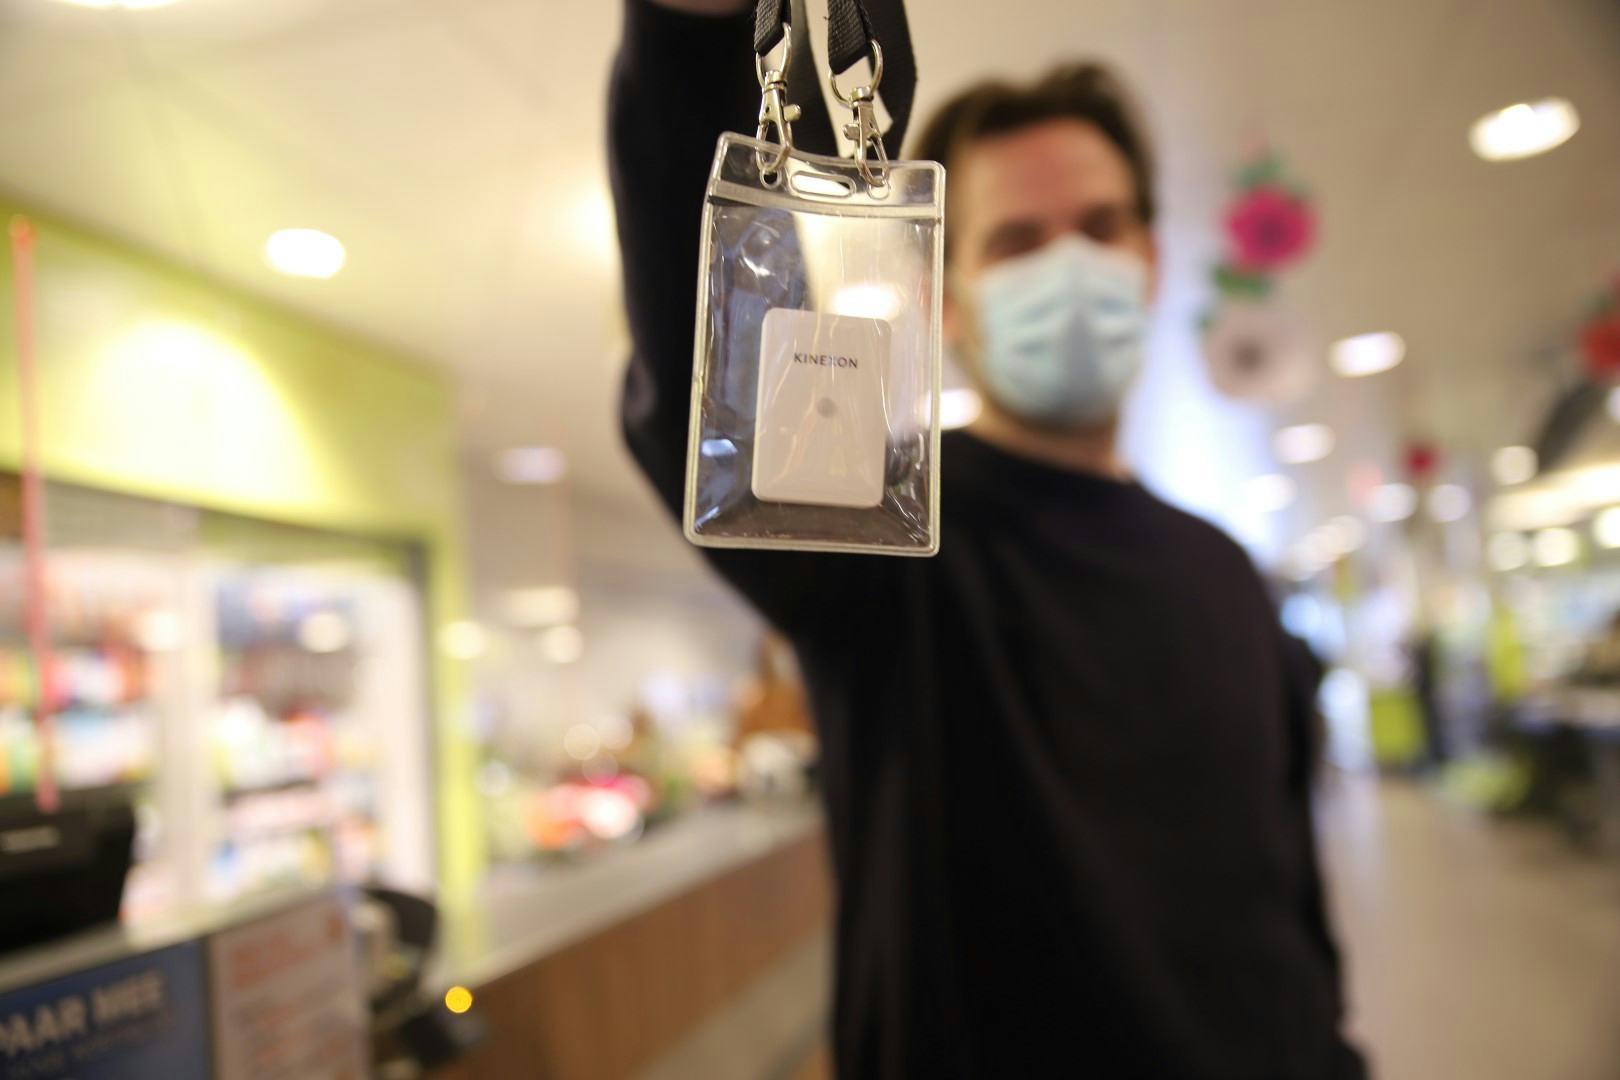 De klant krijgt een tag omgehangen om contactfrequentie en duur te meten. Foto: Distrifood